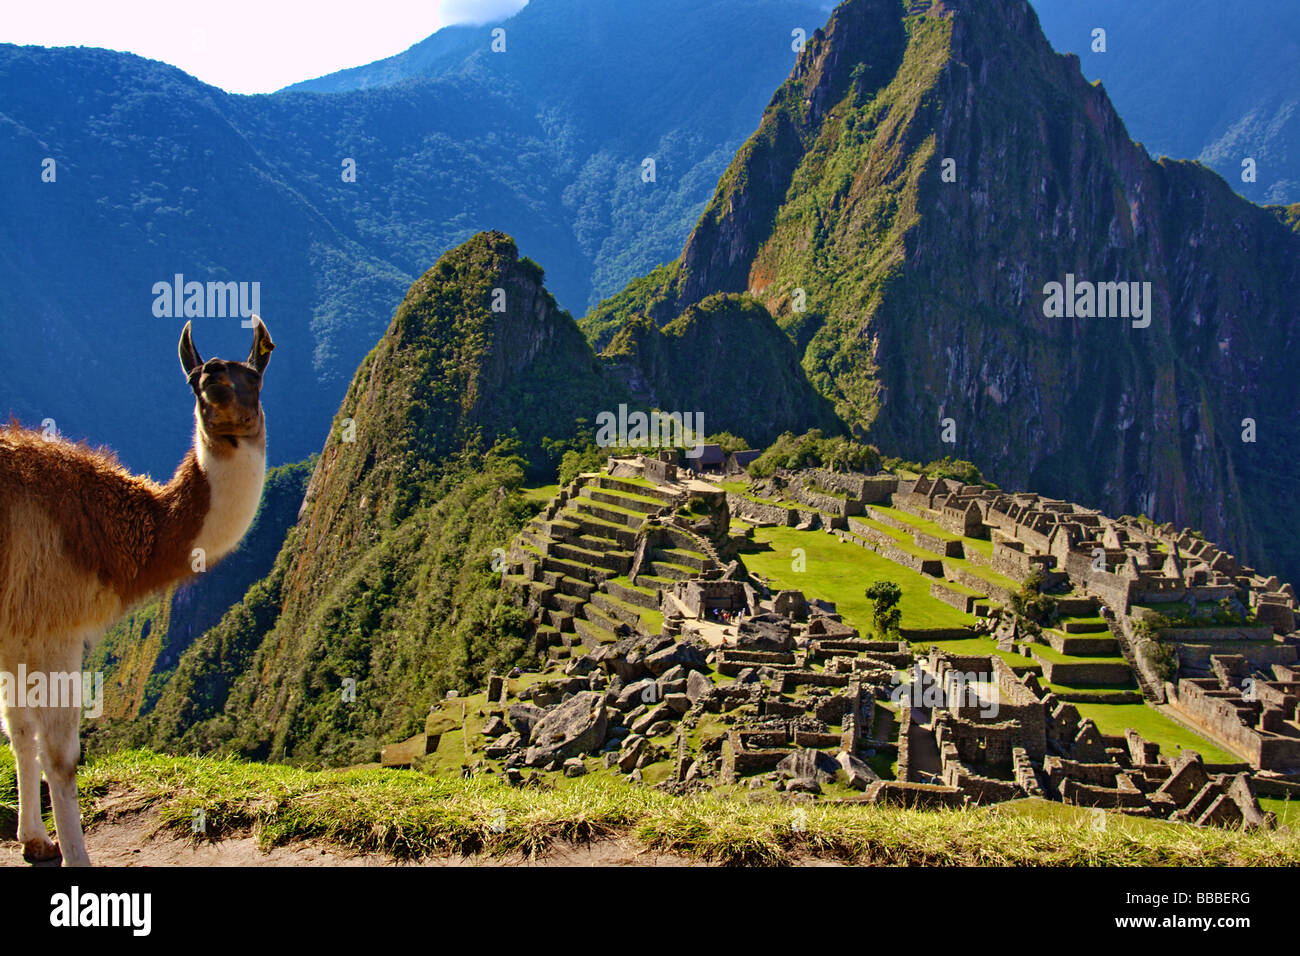 Le lama au Machu Picchu Pérou Amérique du Sud les ruines Inca Banque D'Images